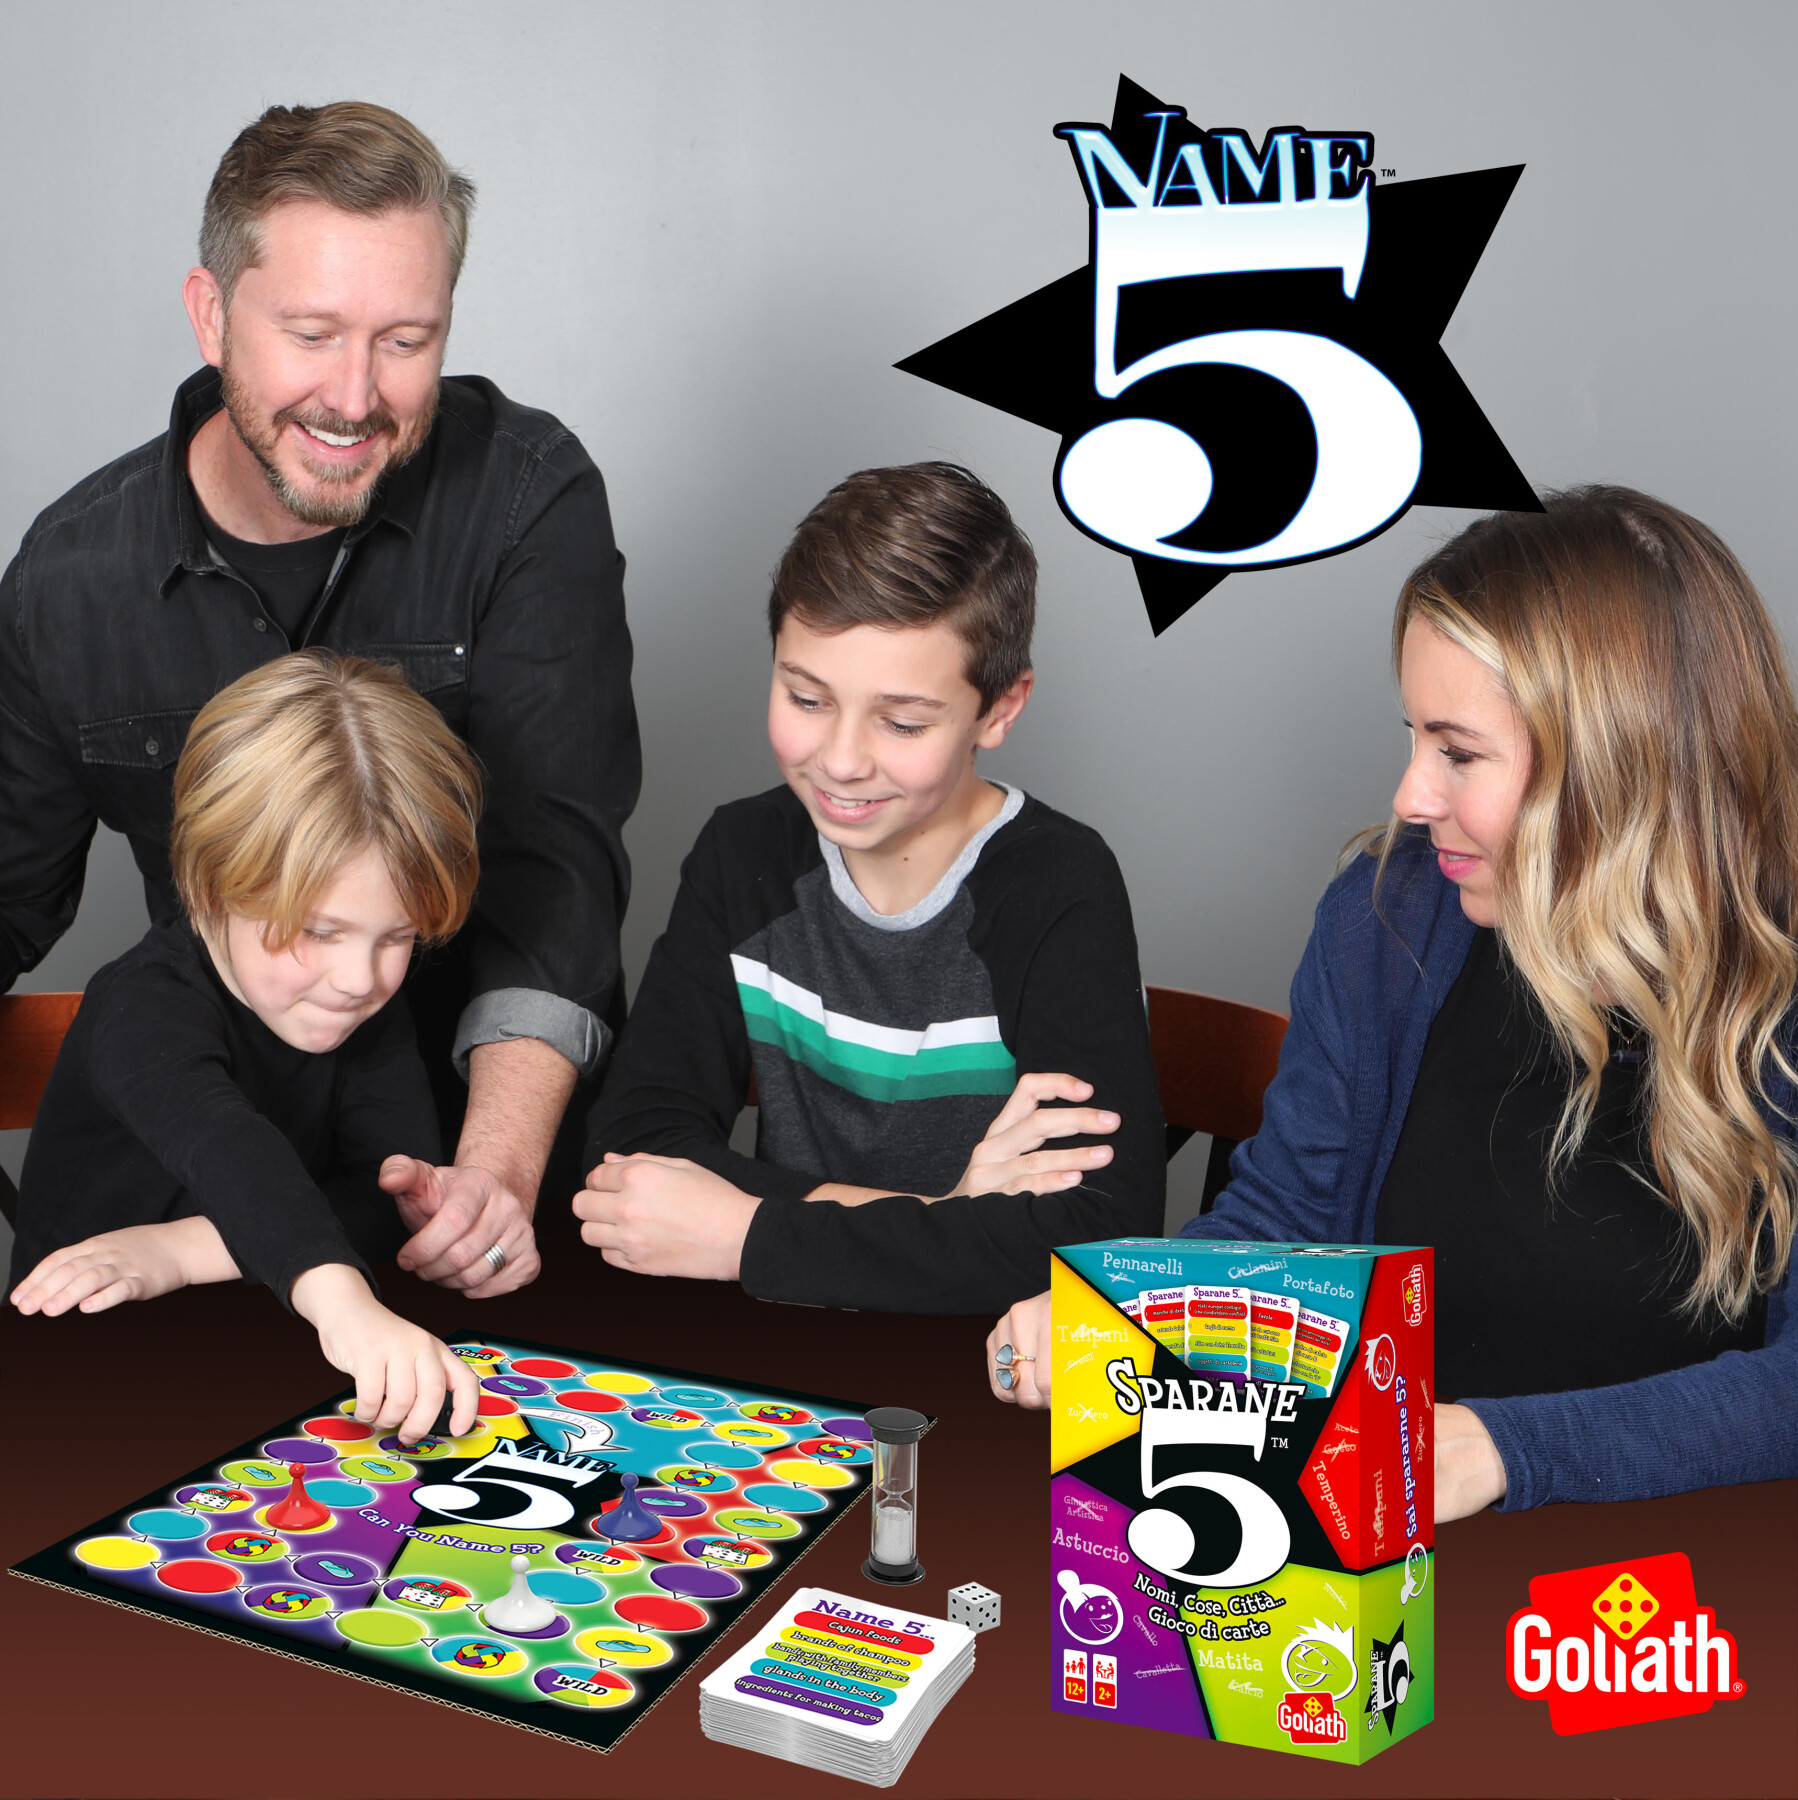 Goliath sparane 5, name 5, gioco di societa', gioco di carte e domande per la famiglia, dai dodici anni in su, divertente e multicolore - 